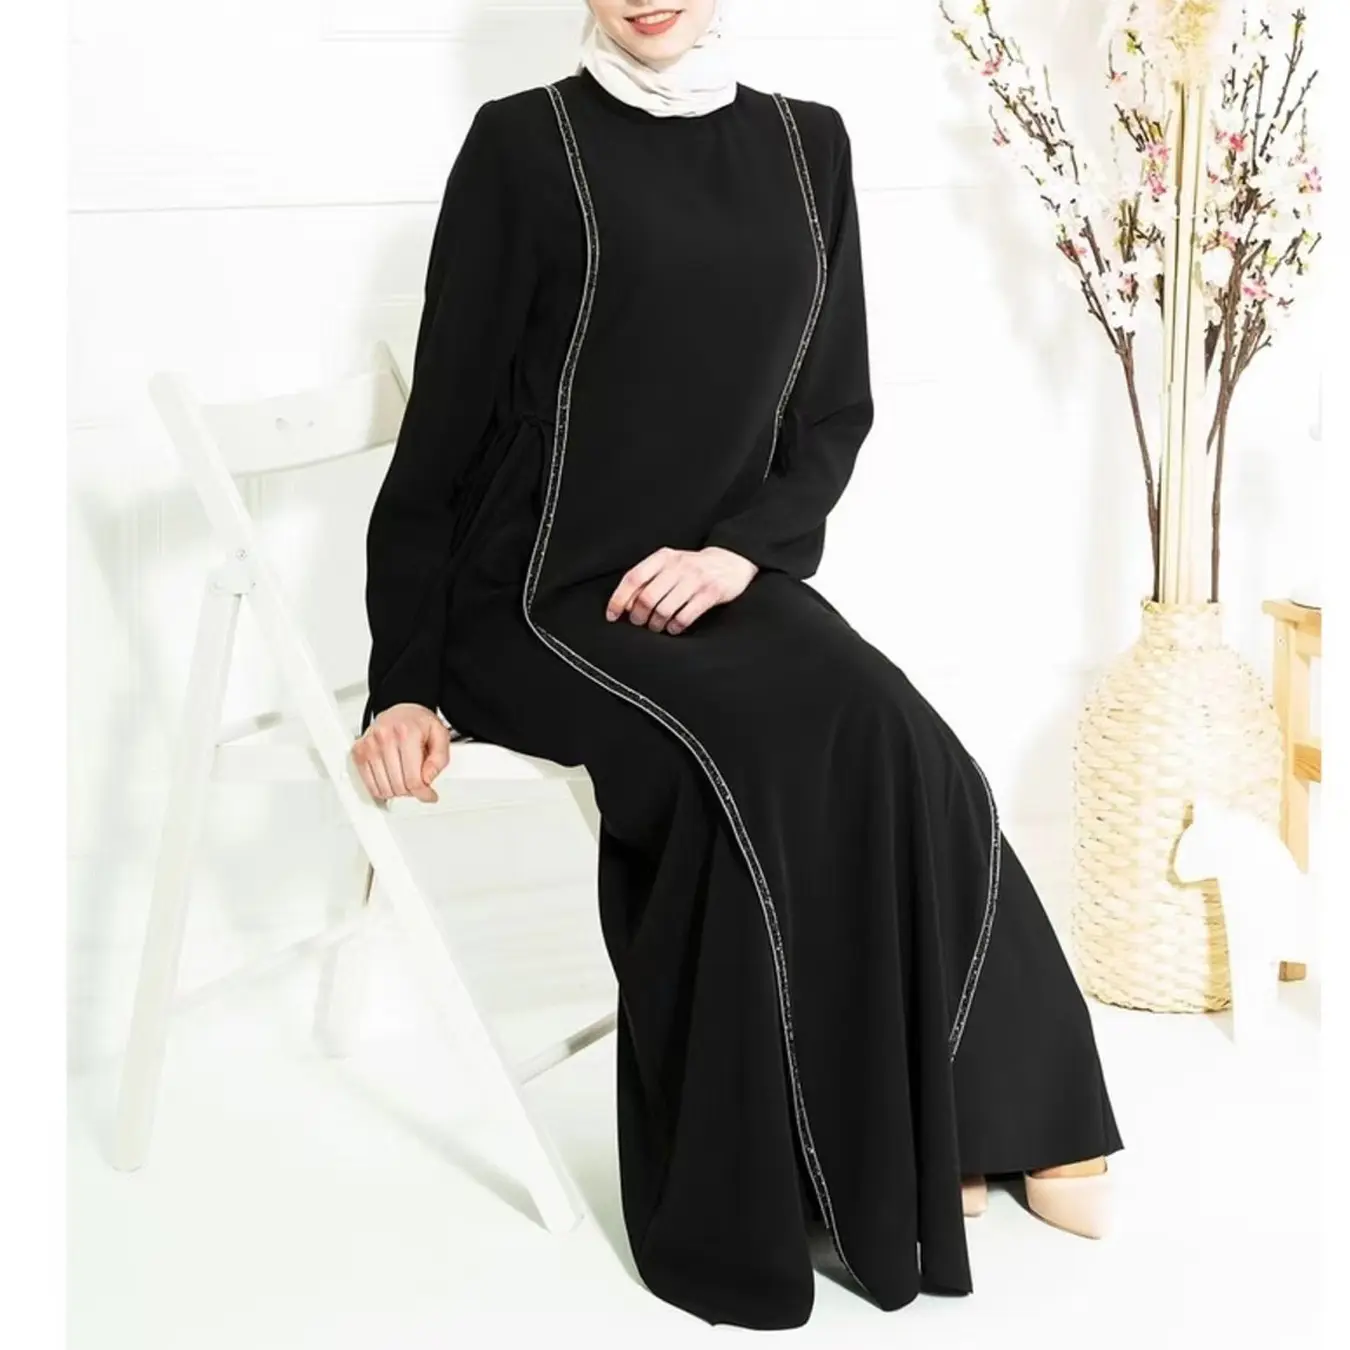 Diseño de moda empalme encaje temperamento elegante suelto simple musulmán modelos de mujer abaya